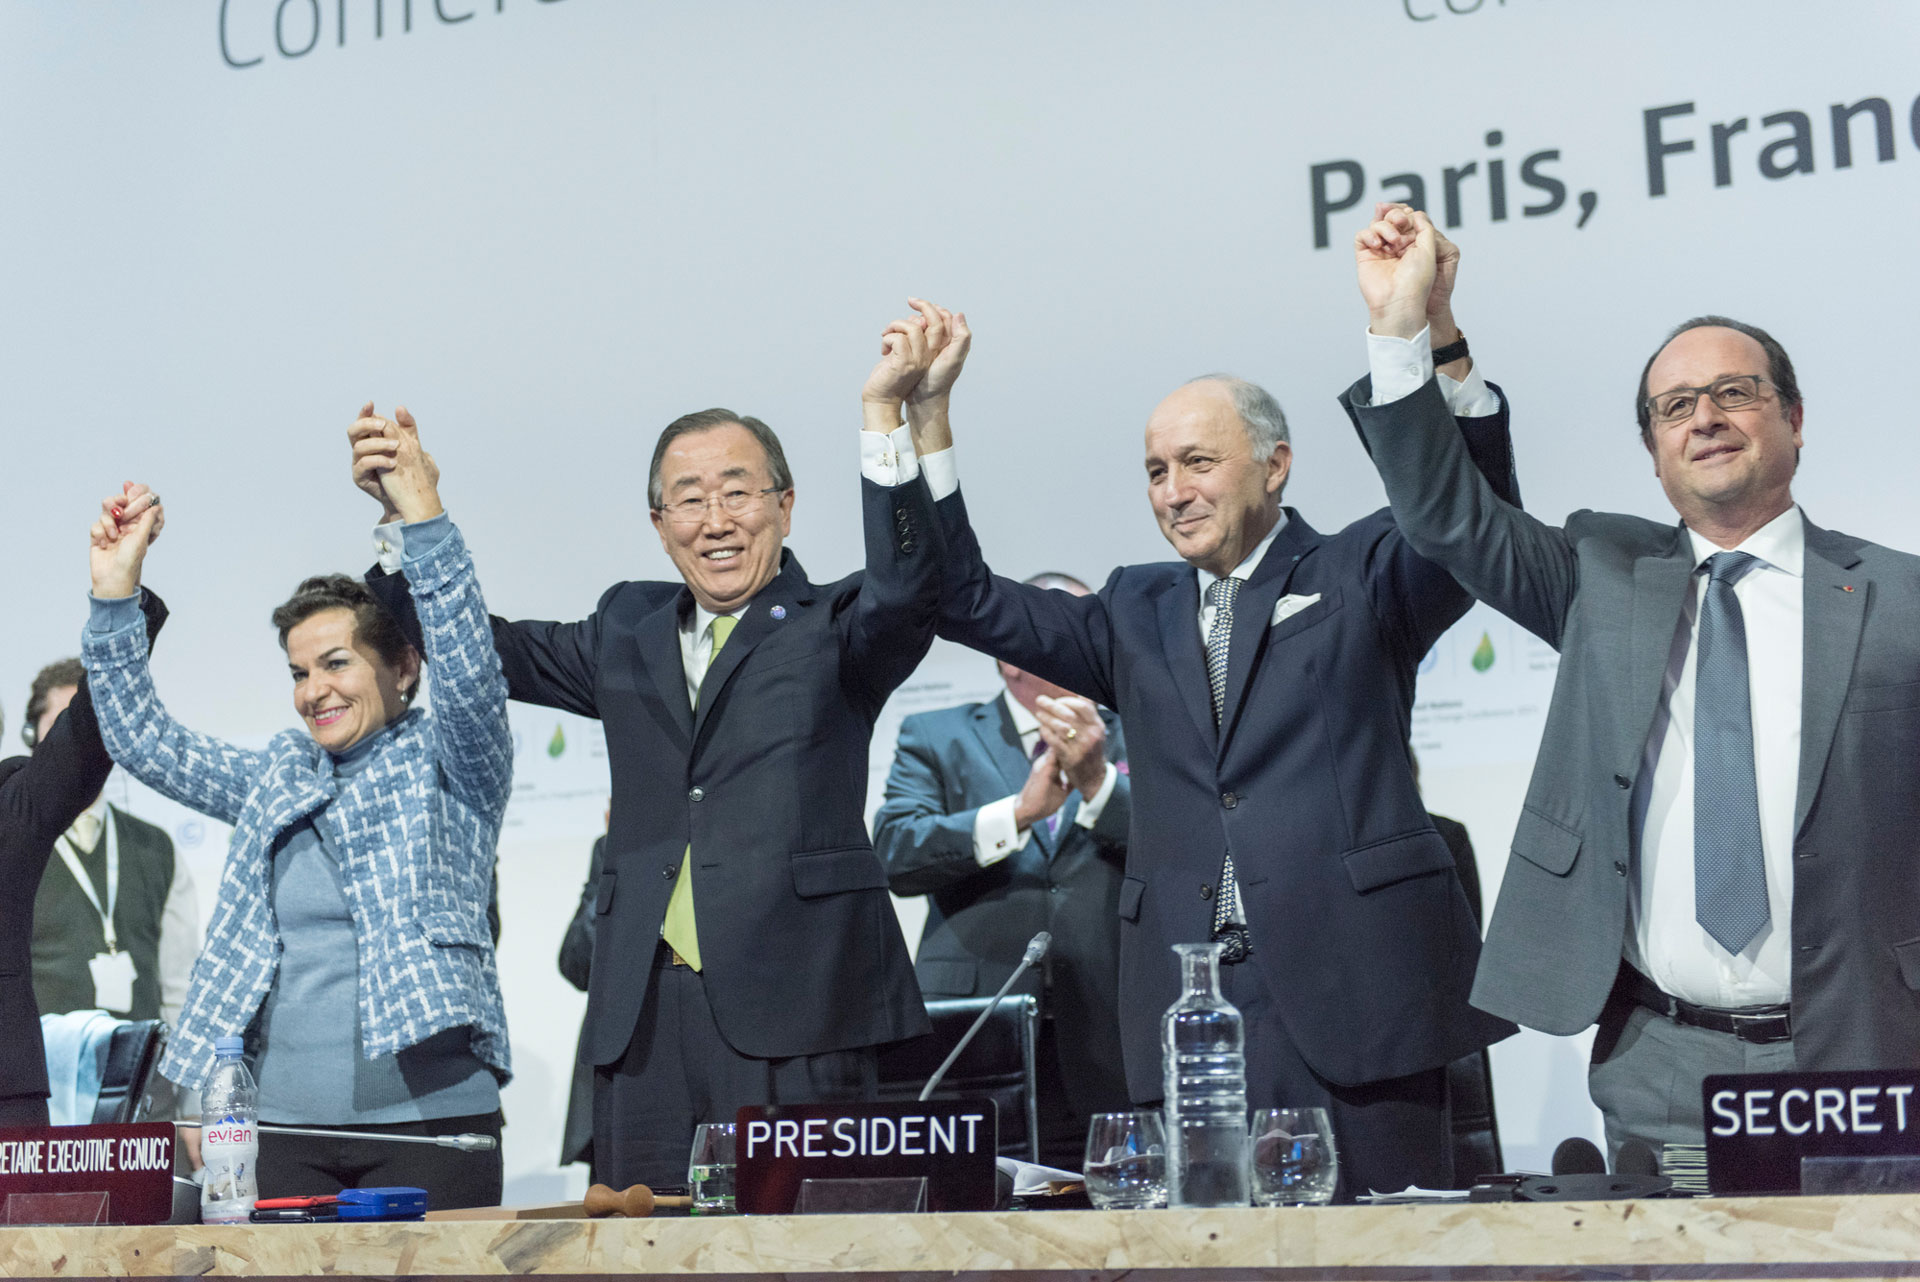 <p><sub>Bývalý generálny tajomník Pan Ki-mun (druhý zľava); Christiana Figueres (vľavo), výkonná tajomníčka Rámcového dohovoru OSN o zmene klímy (UNFCCC); Laurent Fabius (druhý sprava), francúzsky minister zahraničných vecí a predseda Konferencie OSN o zmene klímy v Paríži (COP21) a François Hollande (vpravo), francúzsky prezident, oslavujú po historickom prijatí Parížskej dohody o zmene klímy.</sub></p>